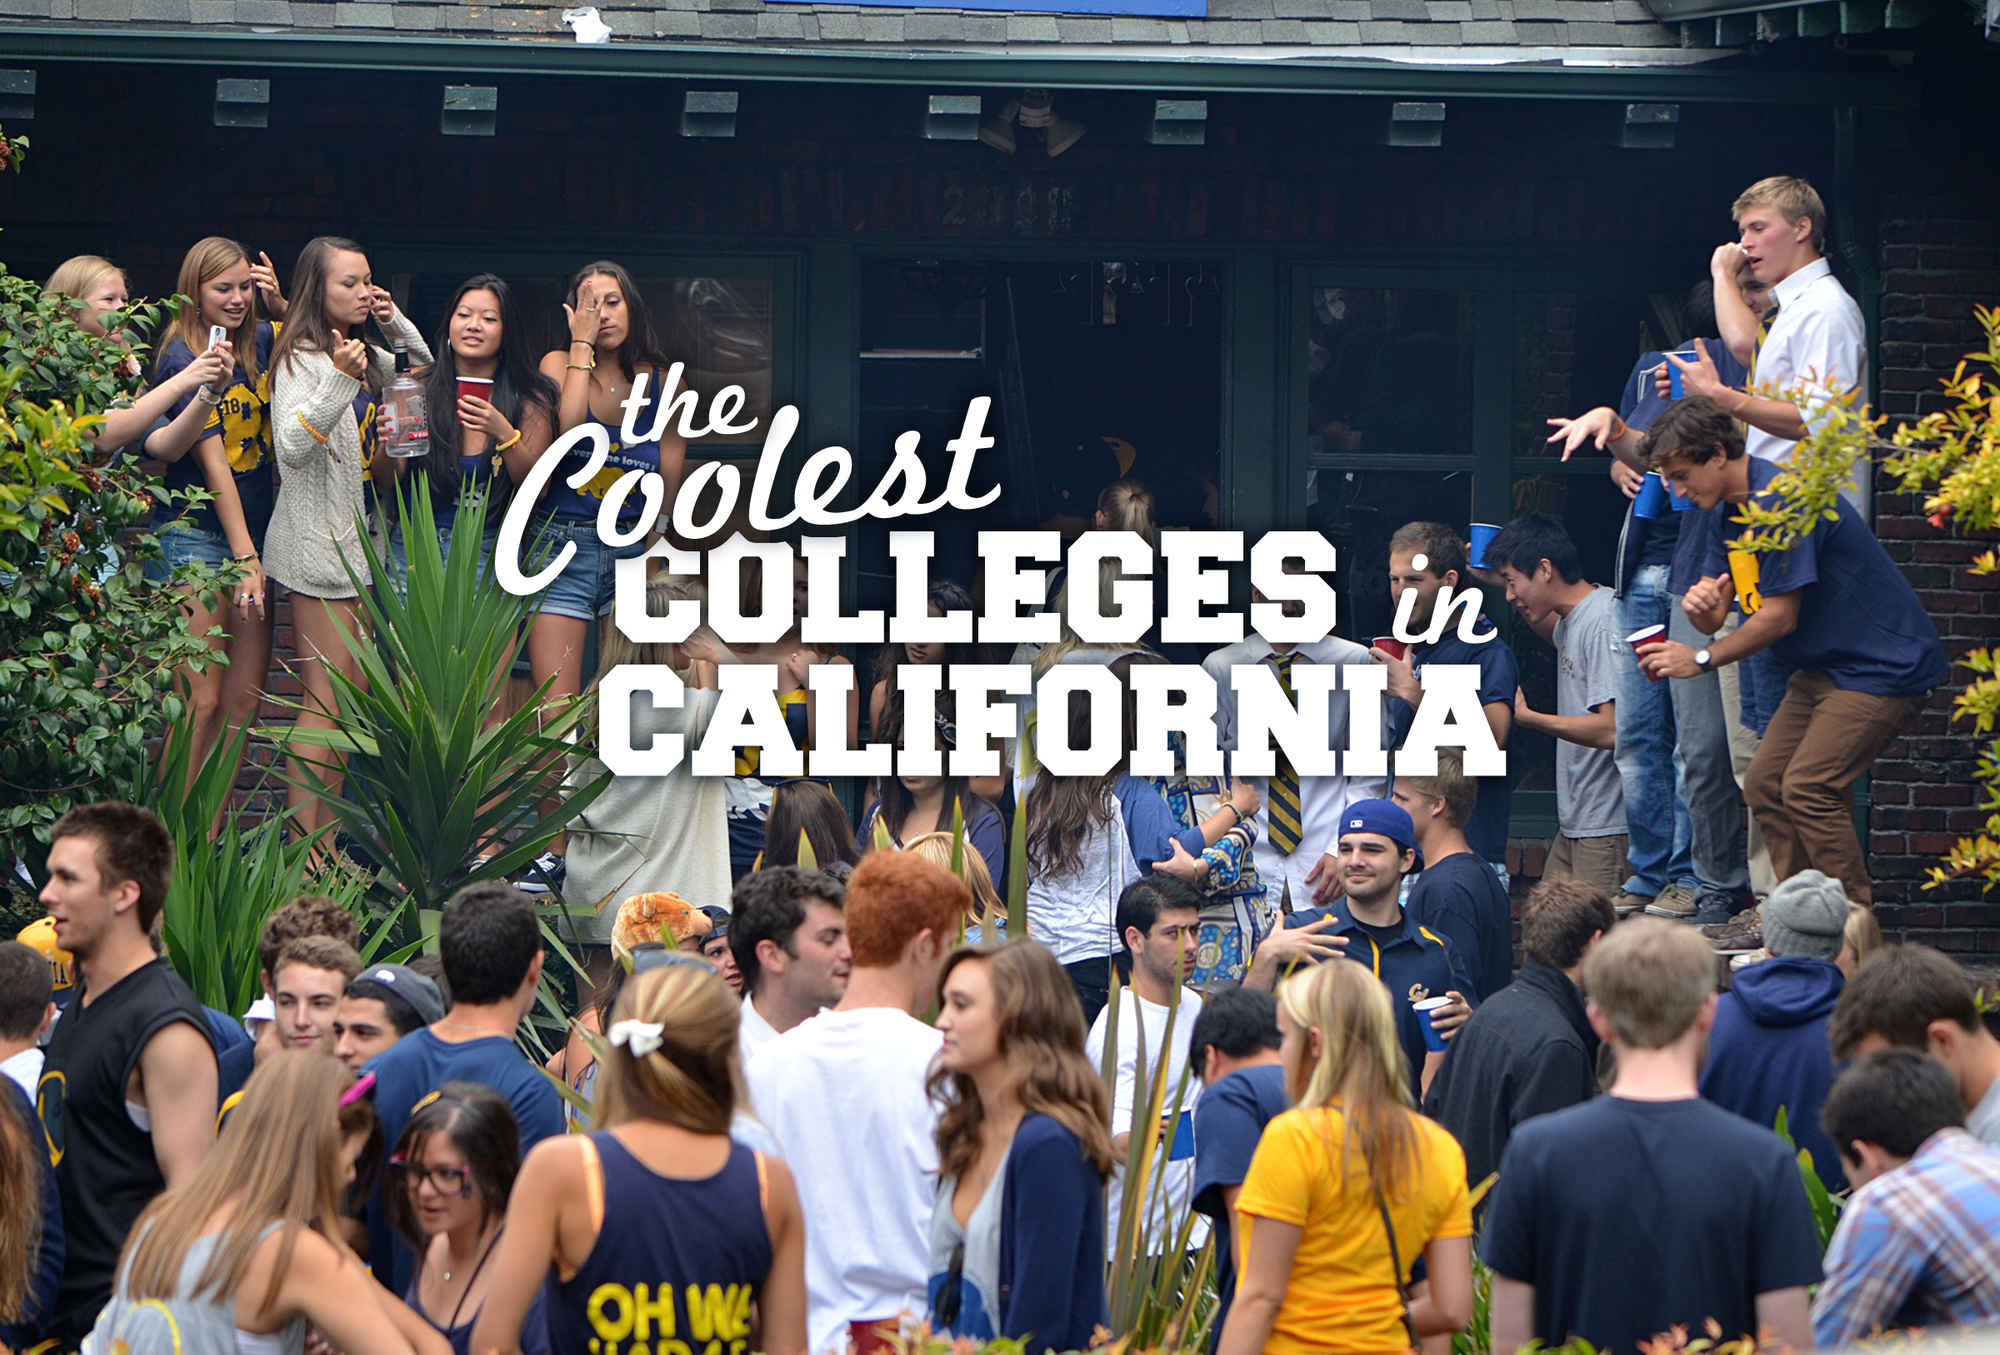 Colleges ranking. Колледжи в Калифорнии. College California. Футхилл колледж в Калифорнии выпускники. California Challenge Soul College.